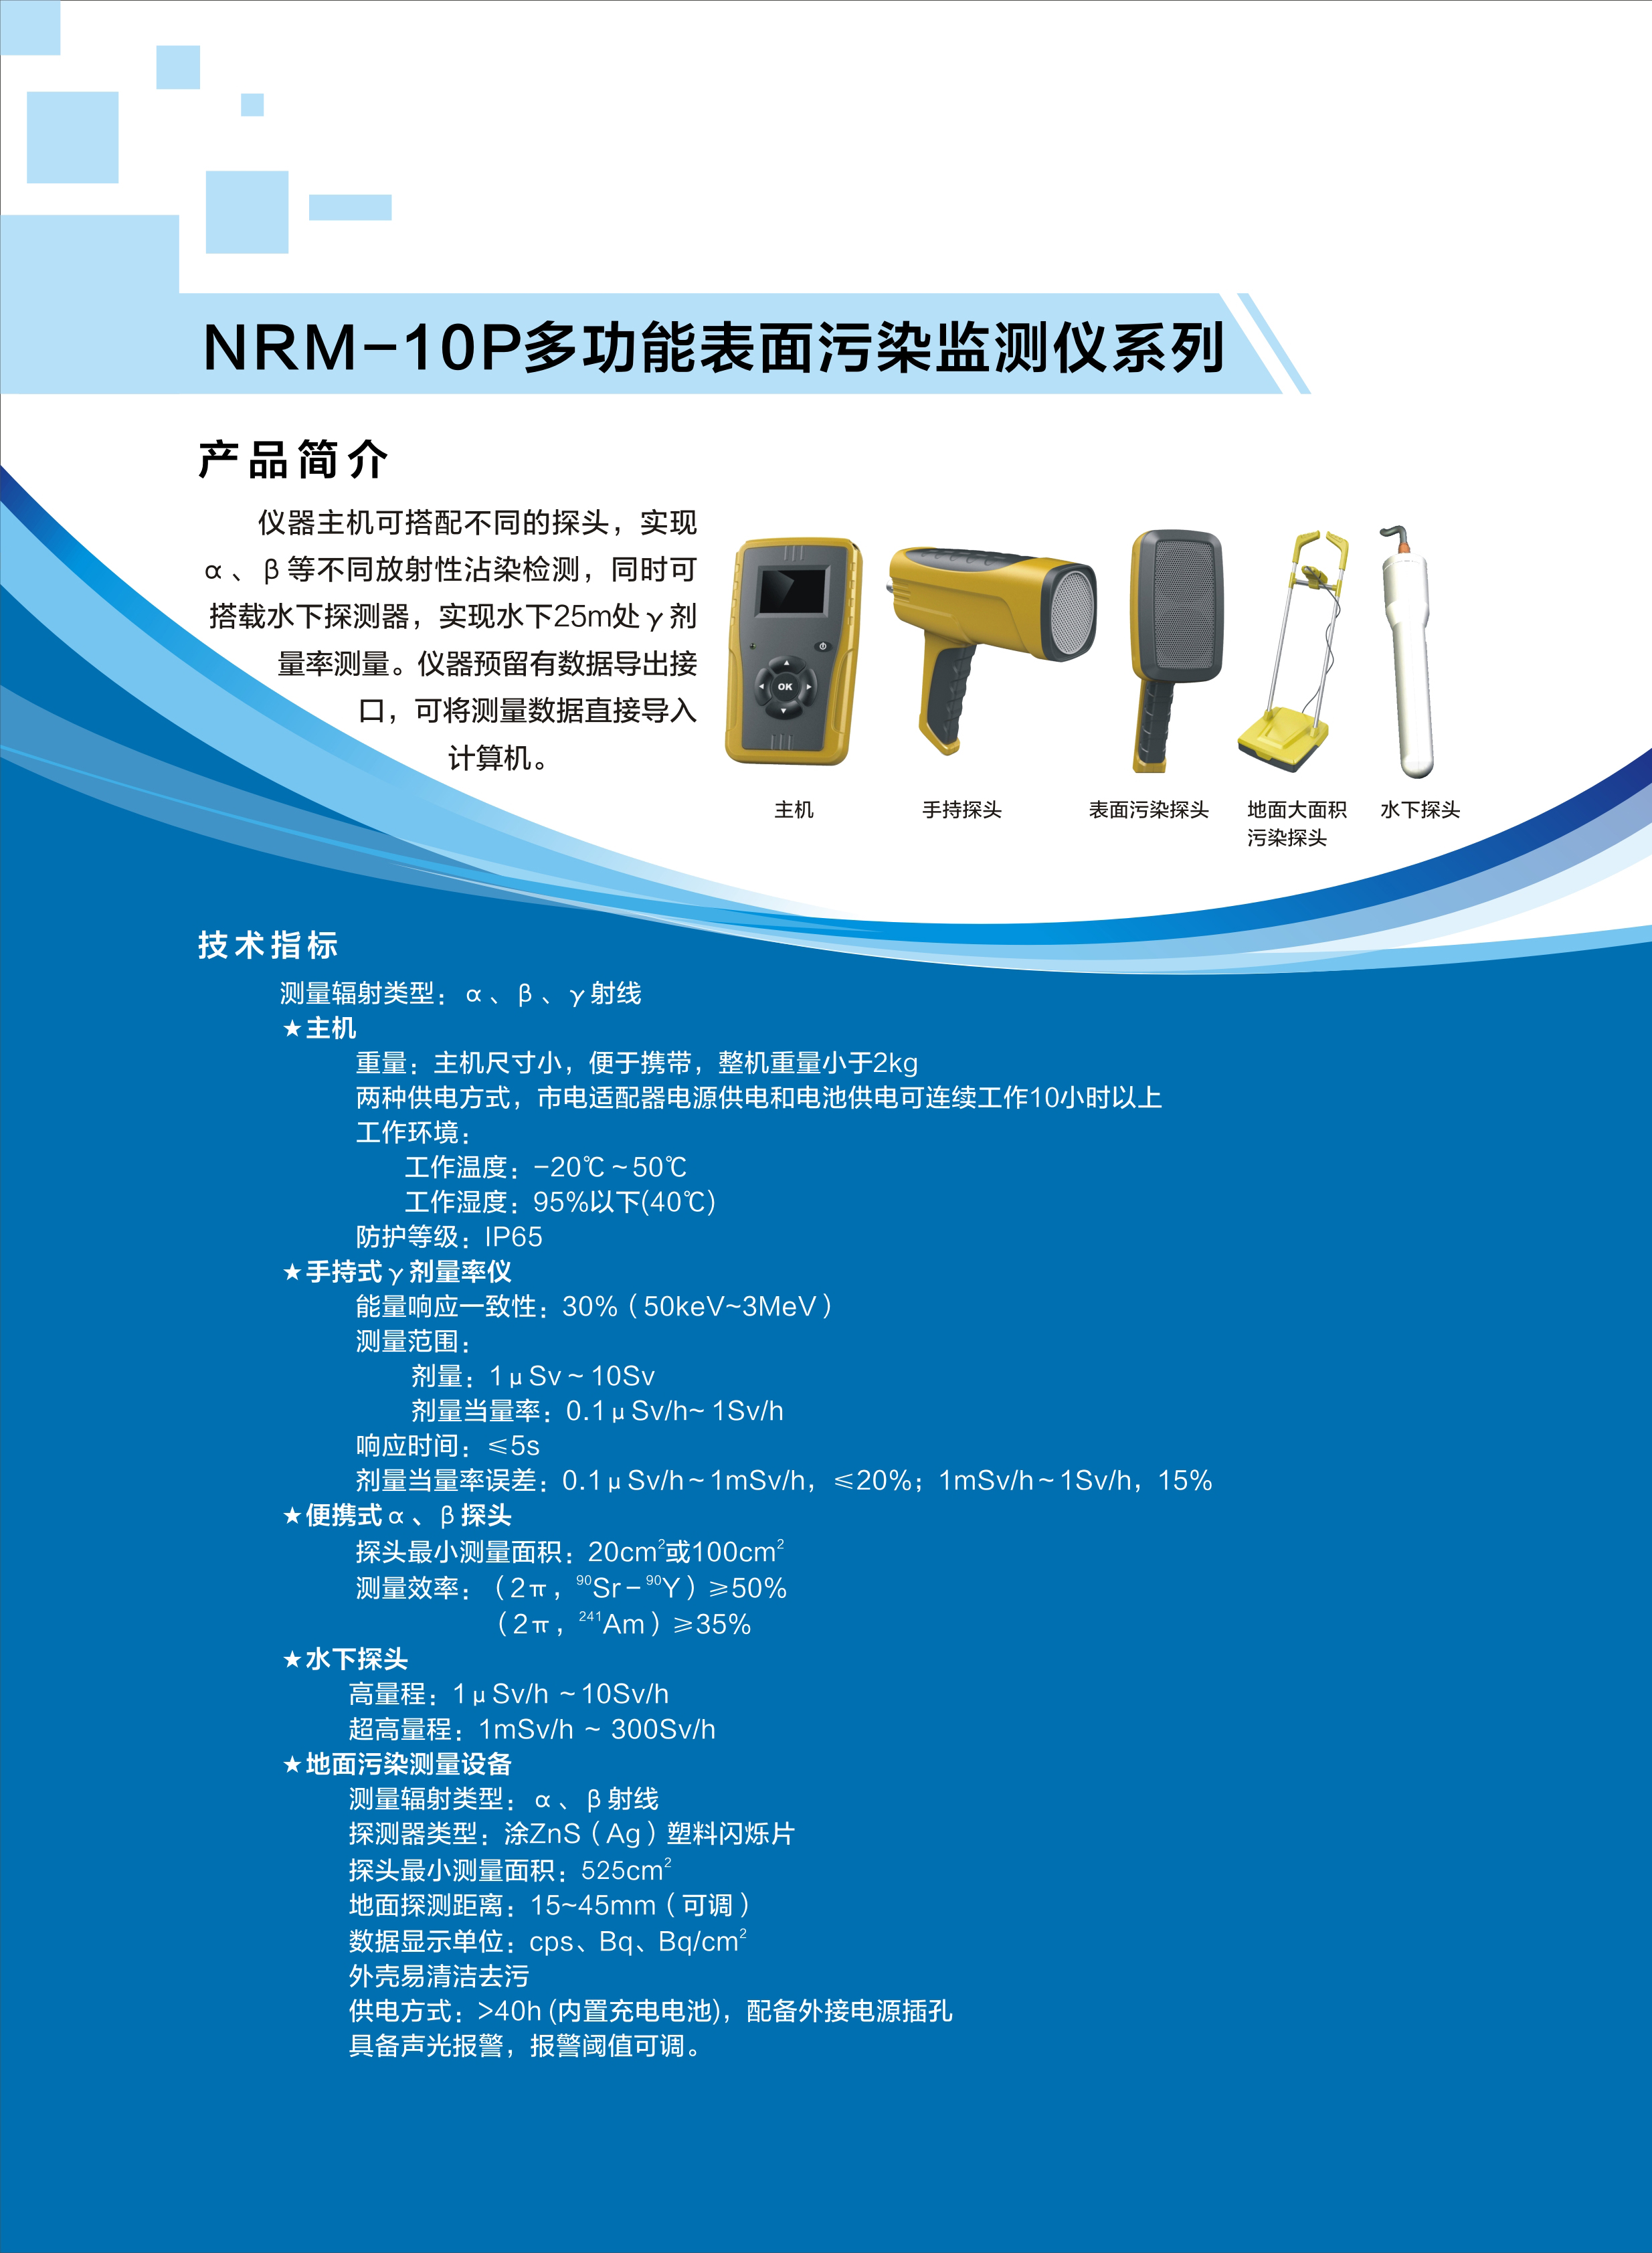 23.NRM-10P多功能表面污染监测仪系列.jpg